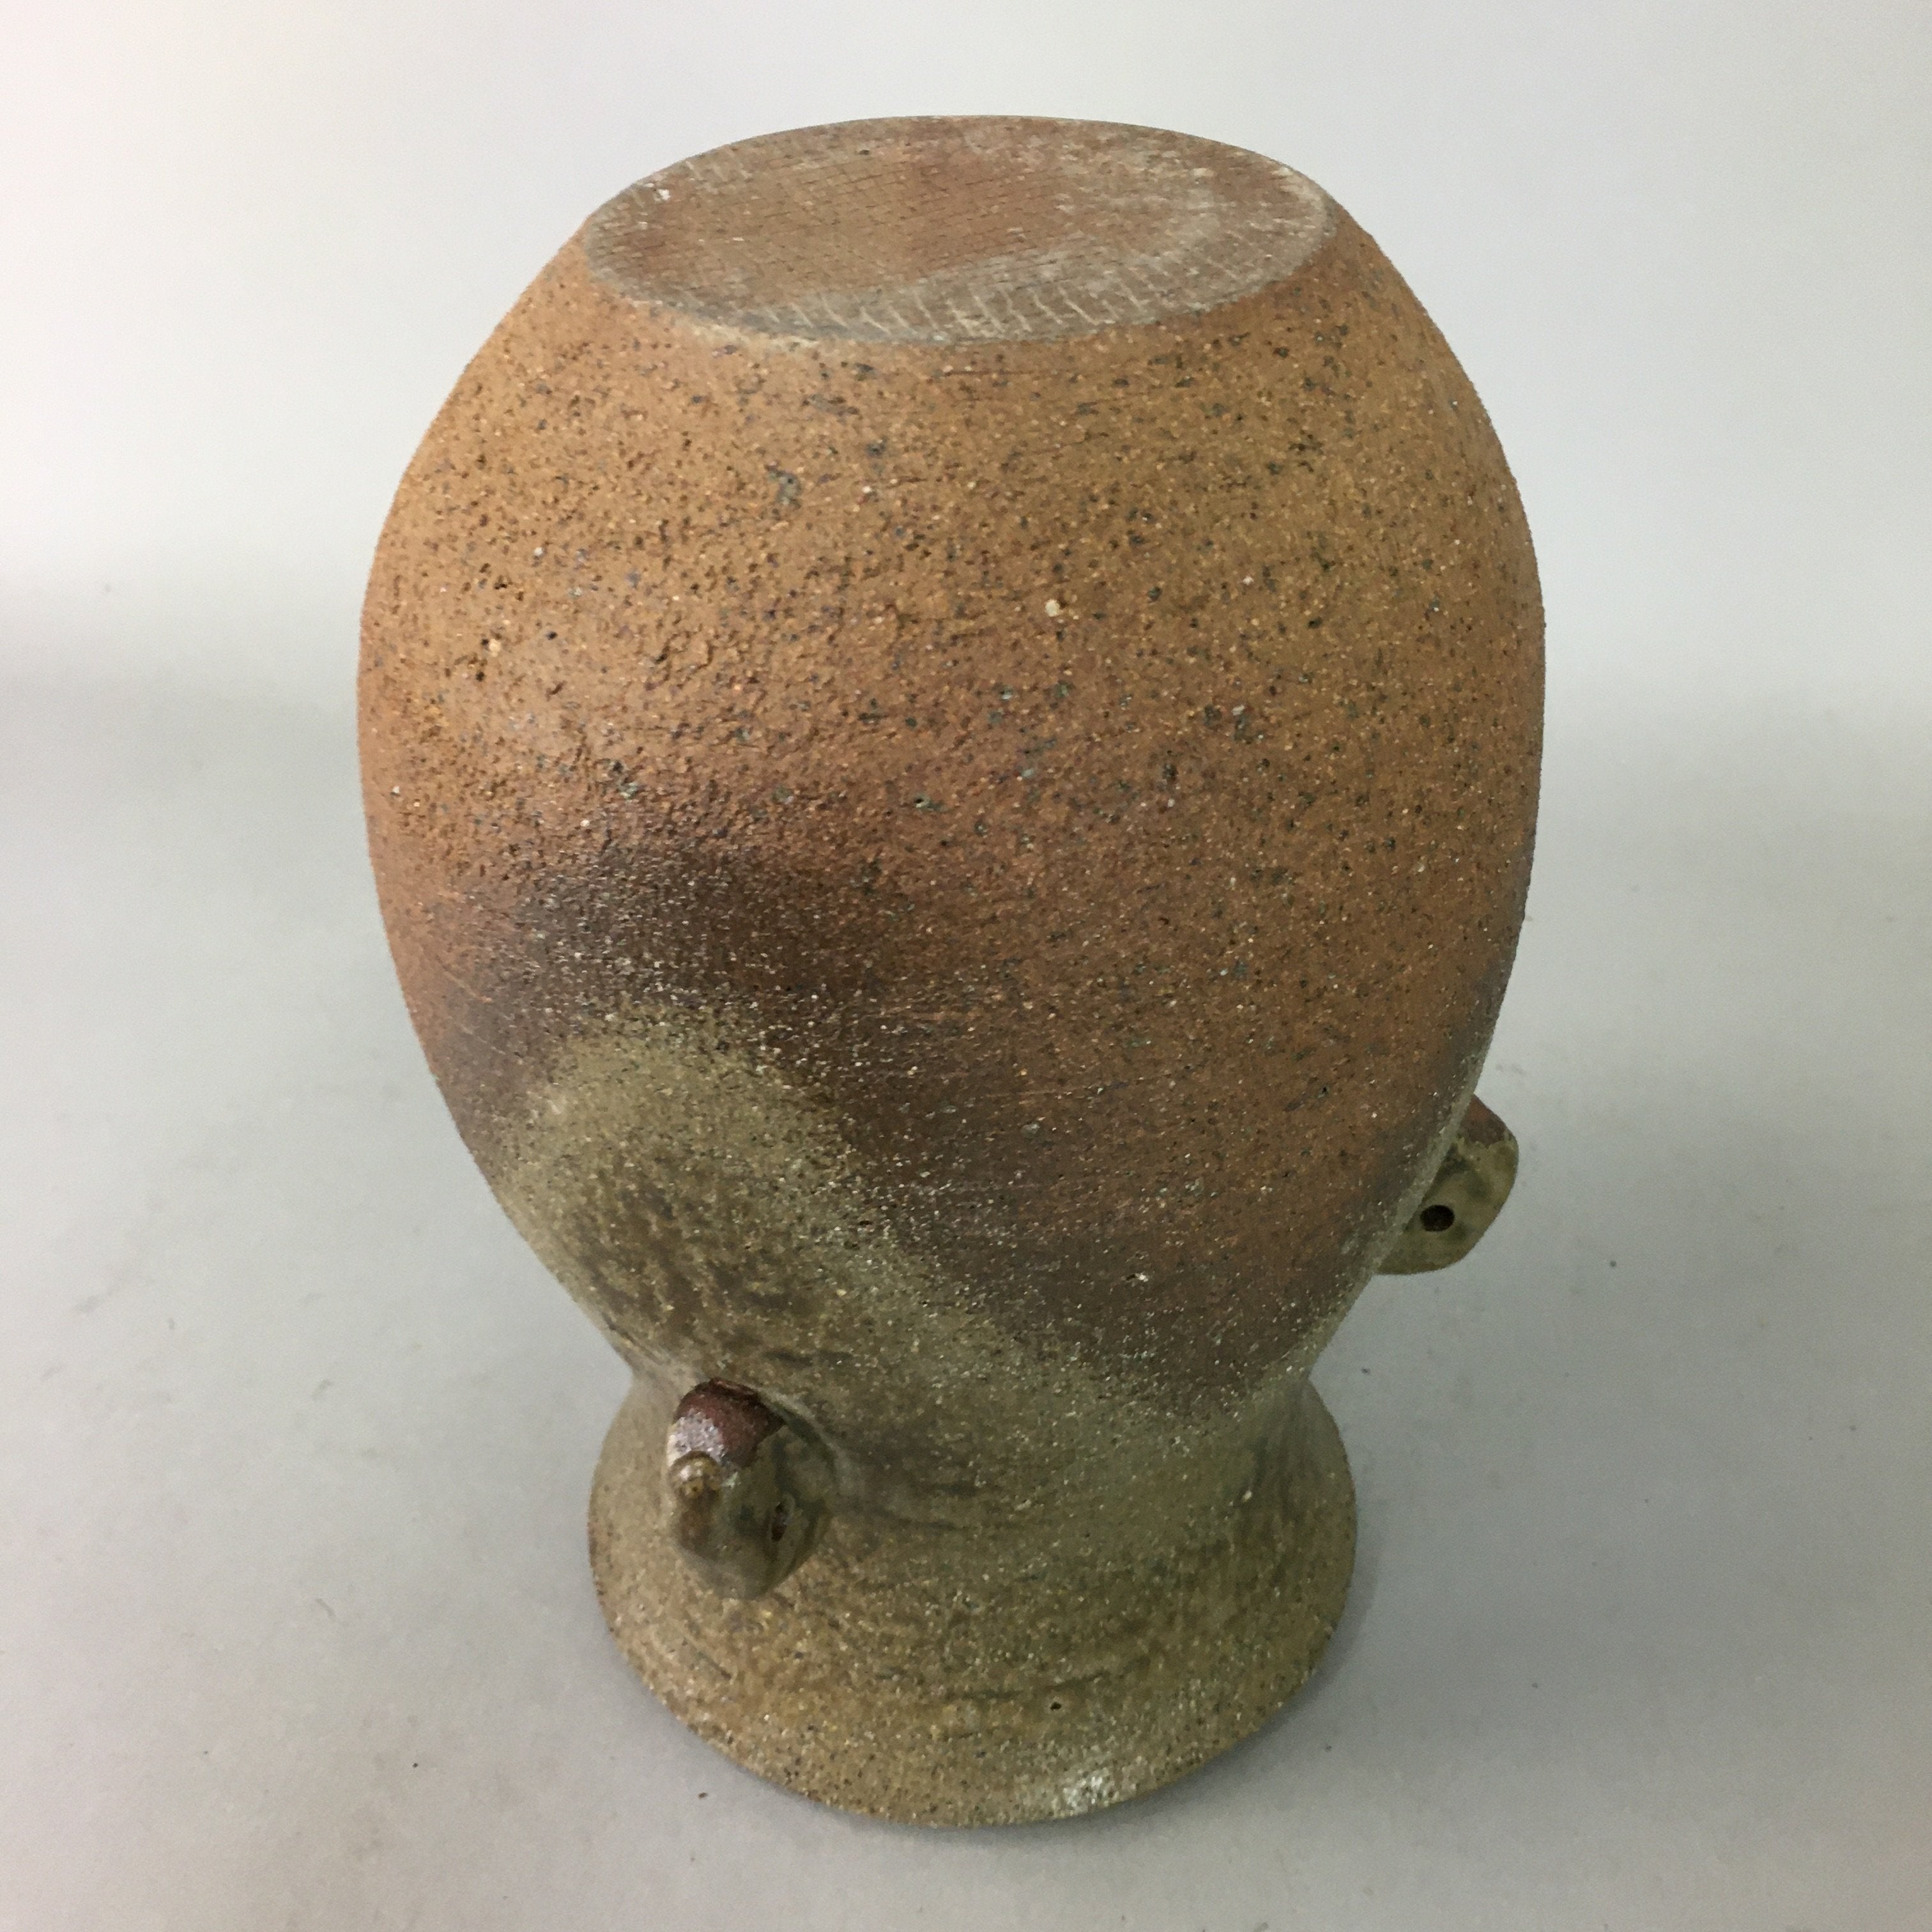 Japanese Ceramic Flower Vase Kabin Vtg Pottery Ikebana Natural Brown FV811